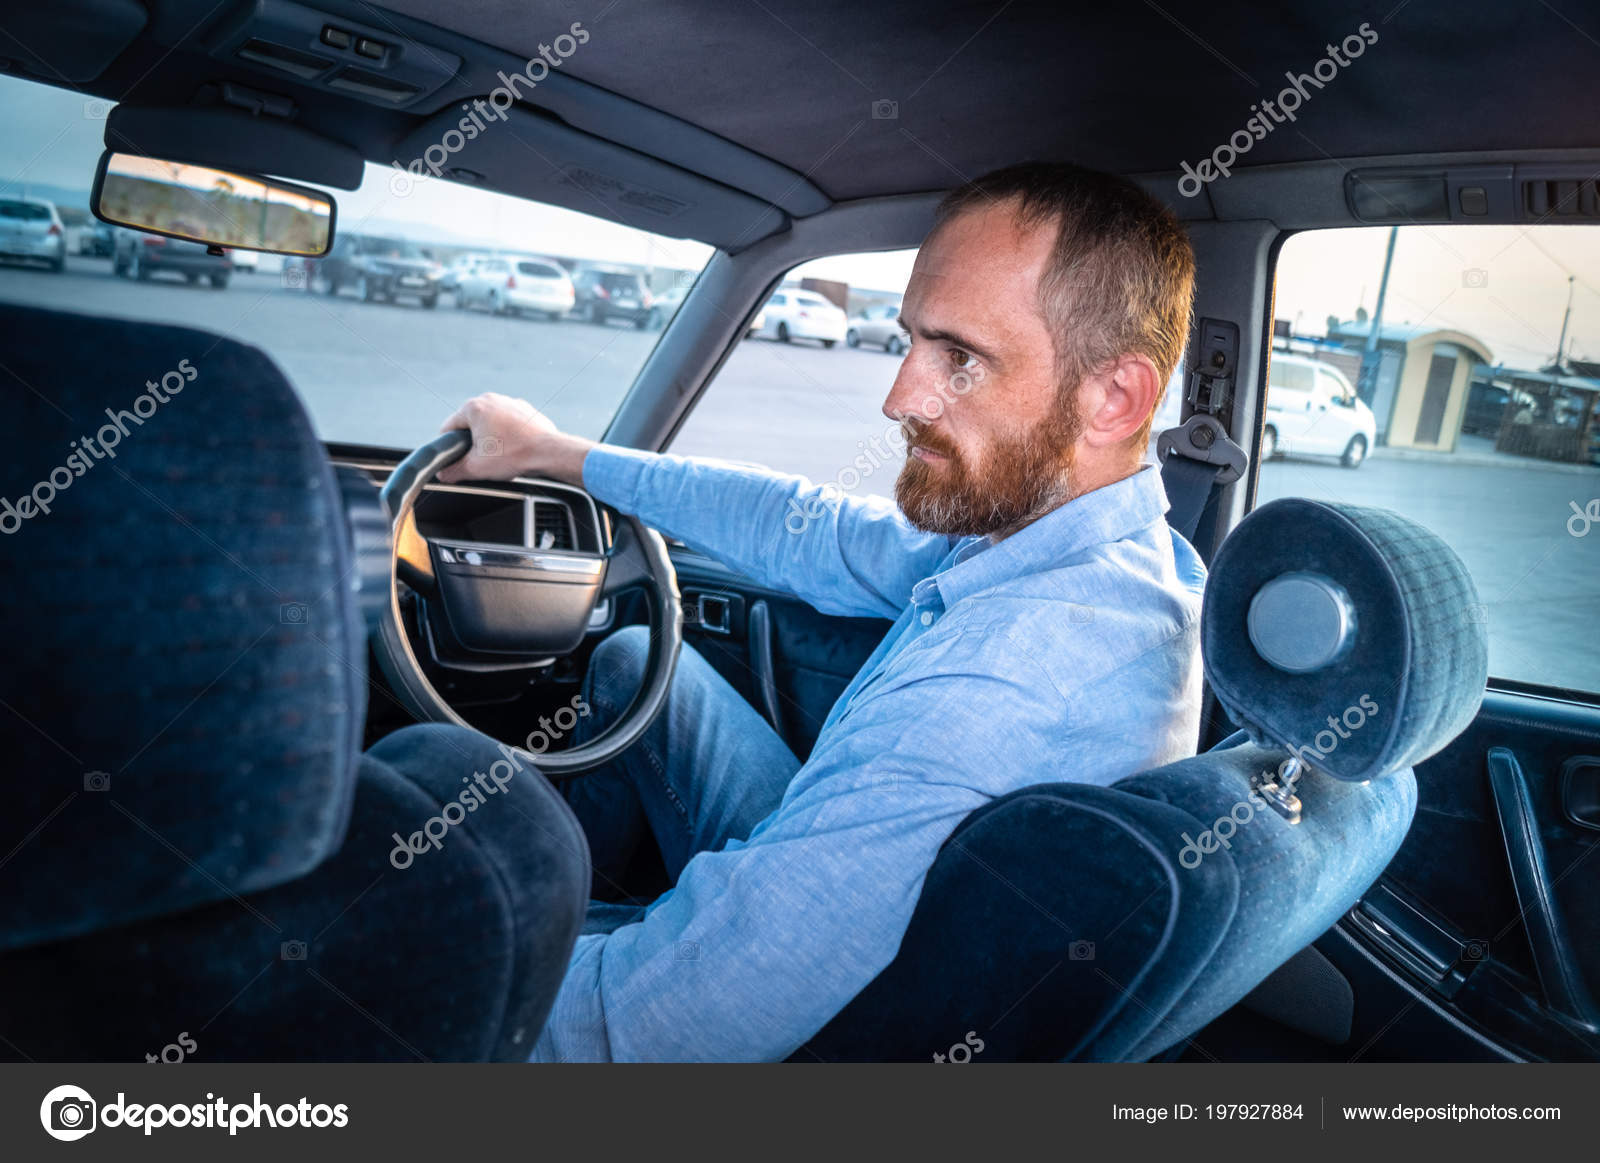 Man Red Beard Blue Shirt Driving Car Parking Lot Blue